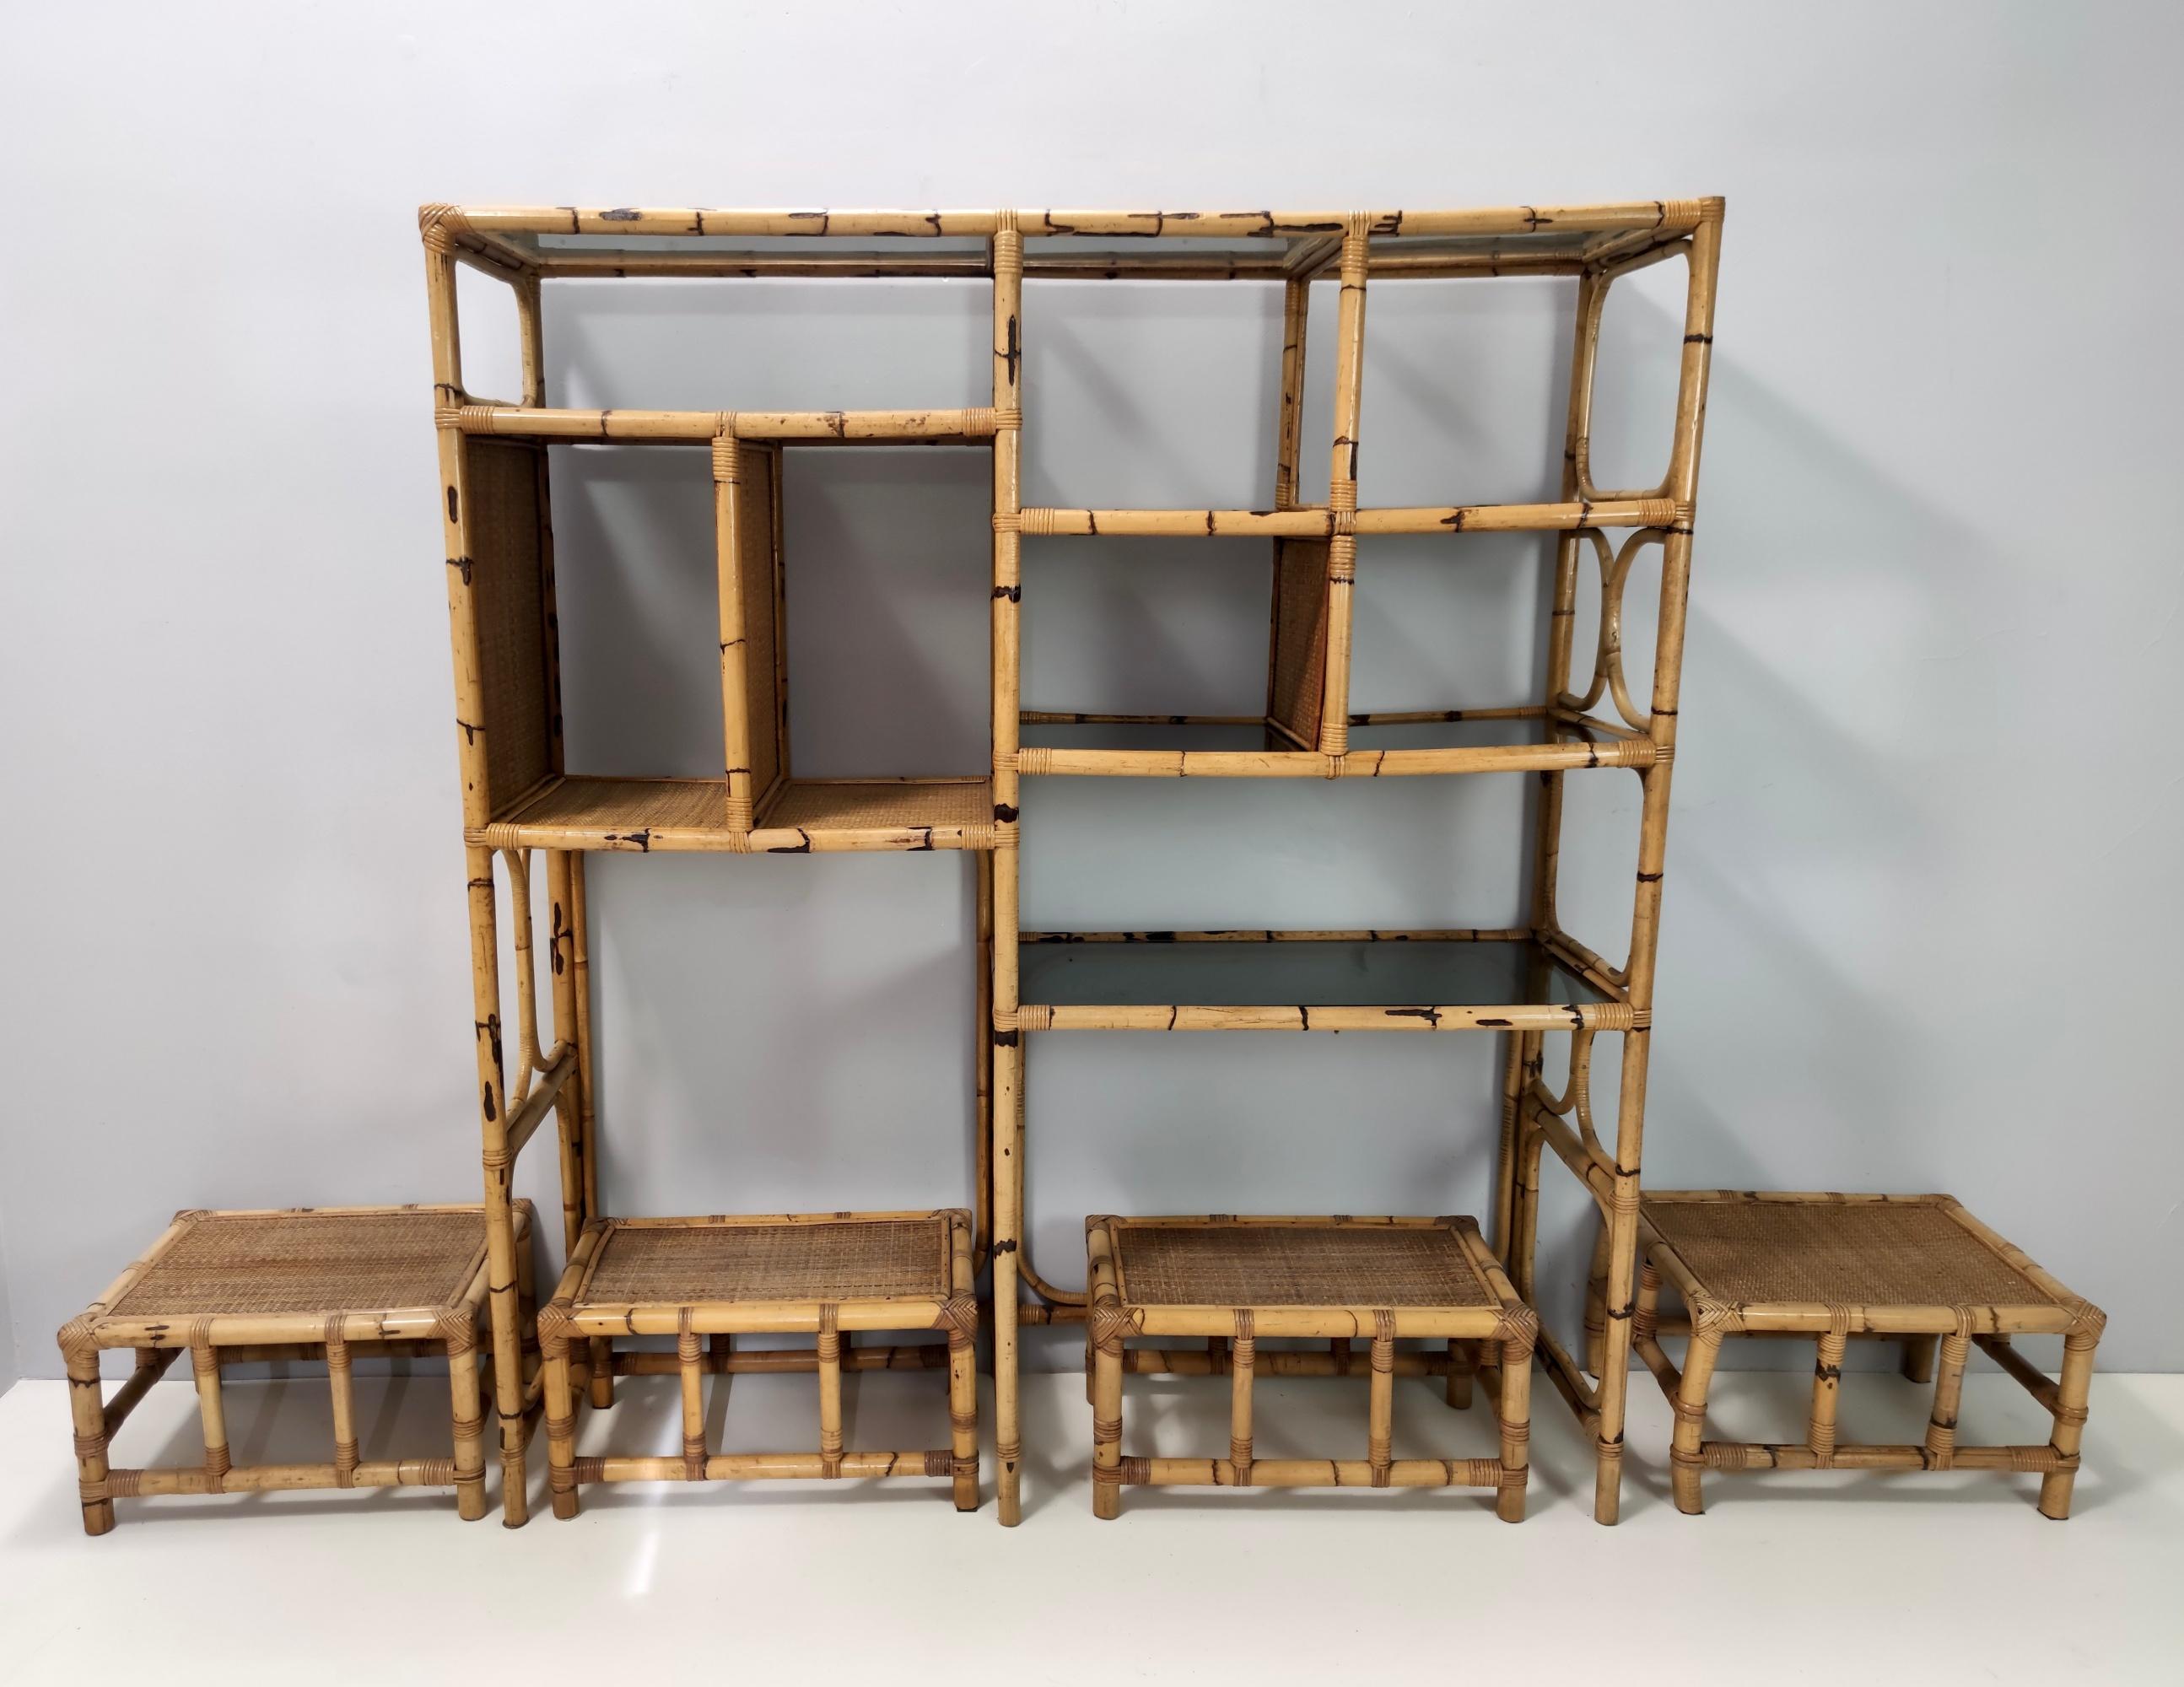 Fabriqué en Italie, années 1970. 
La bibliothèque présente un cadre en bambou et des étagères en verre fumé.
Cet ensemble comprend 4 tabourets en bambou et osier. 
Ils peuvent présenter de légères traces d'utilisation puisqu'ils sont vintage,